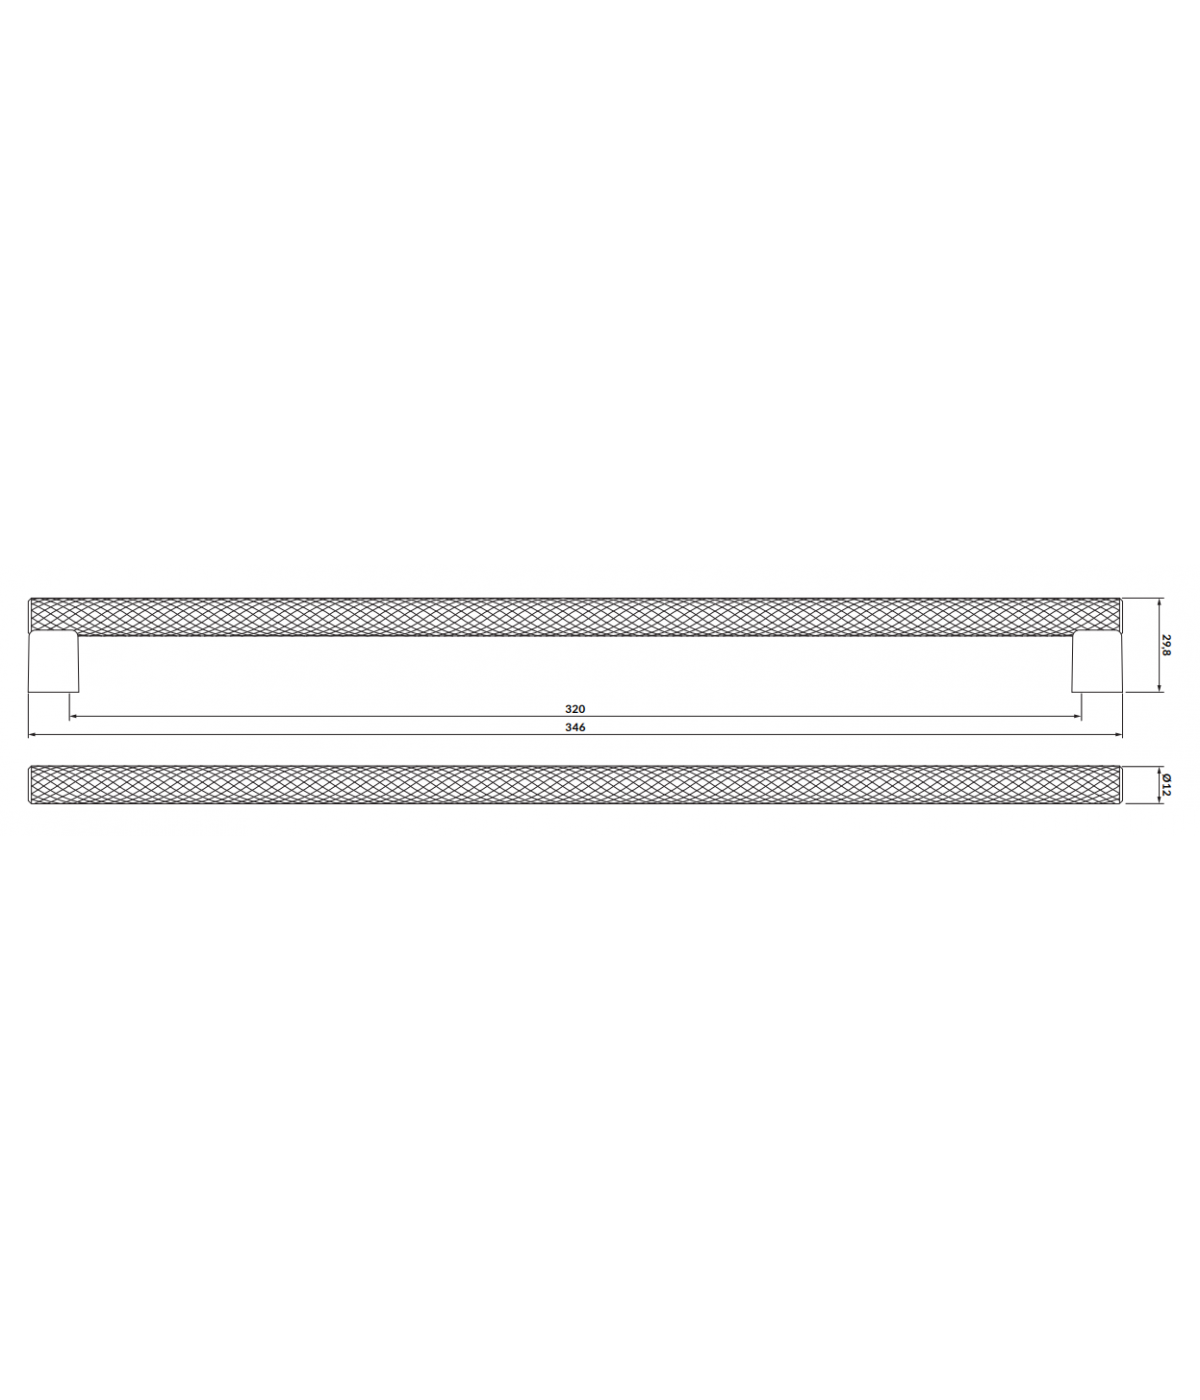 Badmöbel Set LARGA 80 Waschbecken-Unterschrank mit Waschbecken, 2-Schubladen, Weiß, 2x Silber Möbelgriffe